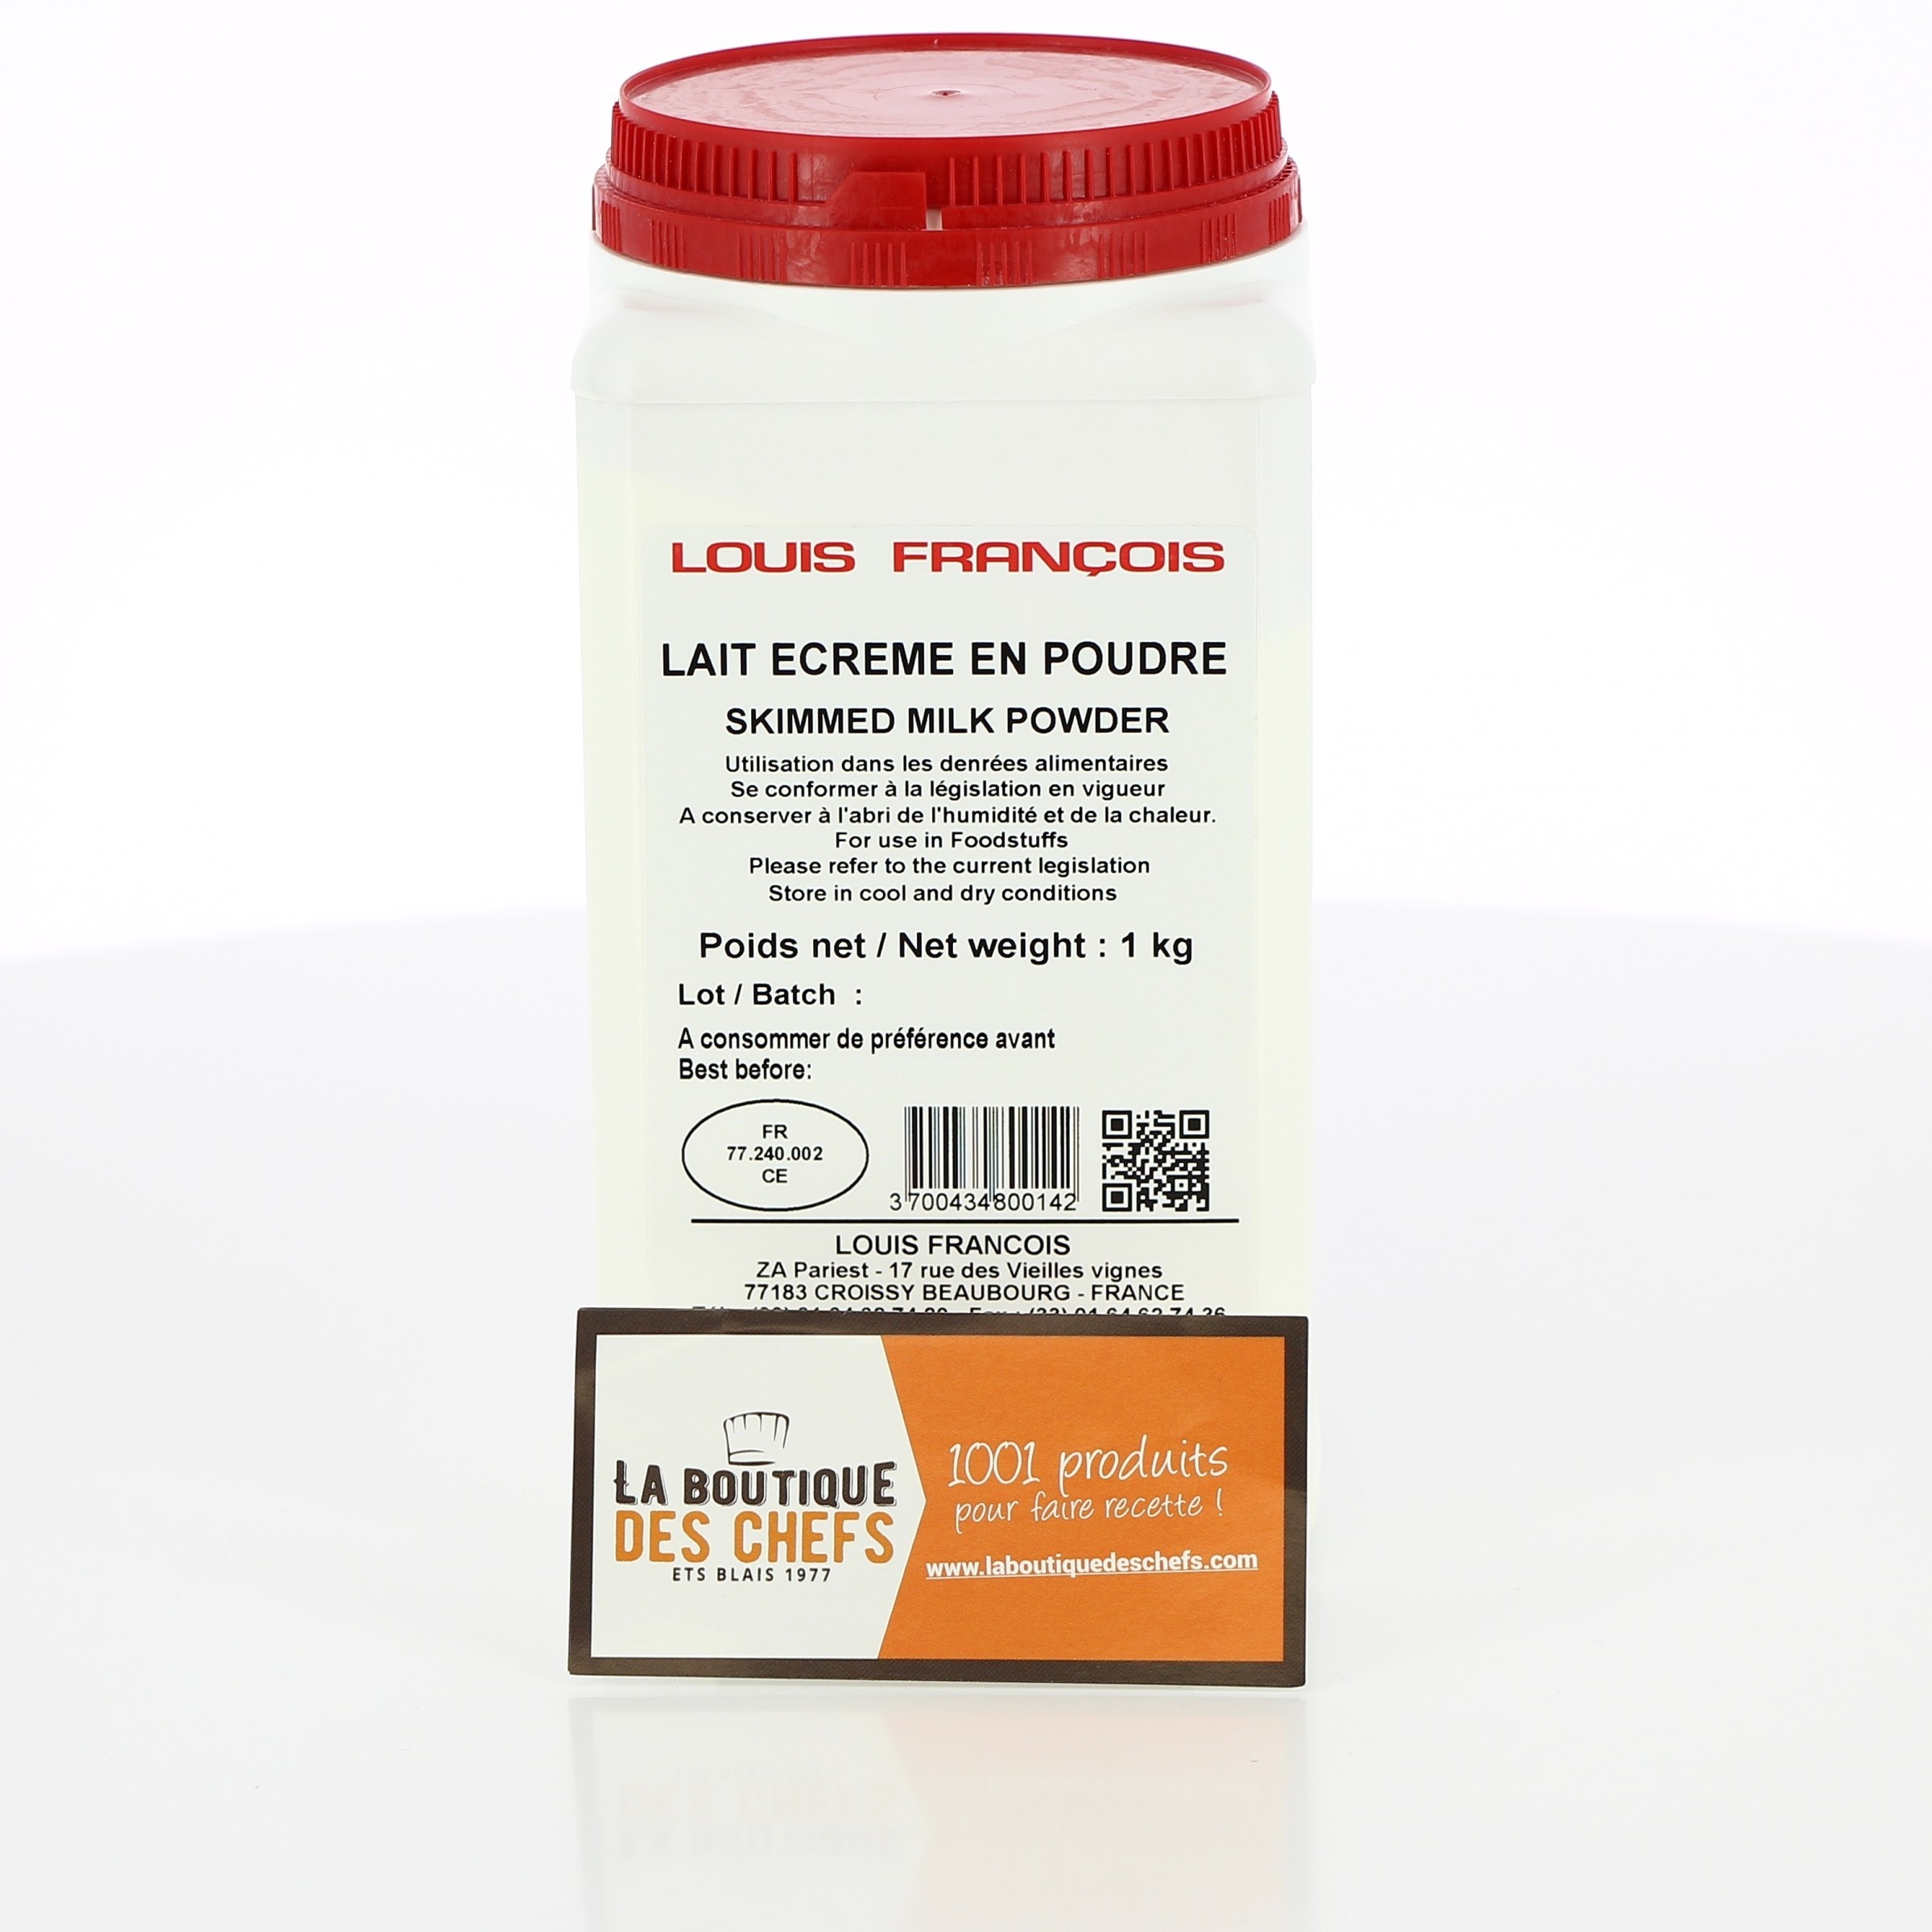 https://www.laboutiquedeschefs.com/media/images/products/w-2400-h-2400-zc-5-lait-ecreme-en-poudre-louis-francois-1kg-2-1561970652.jpg